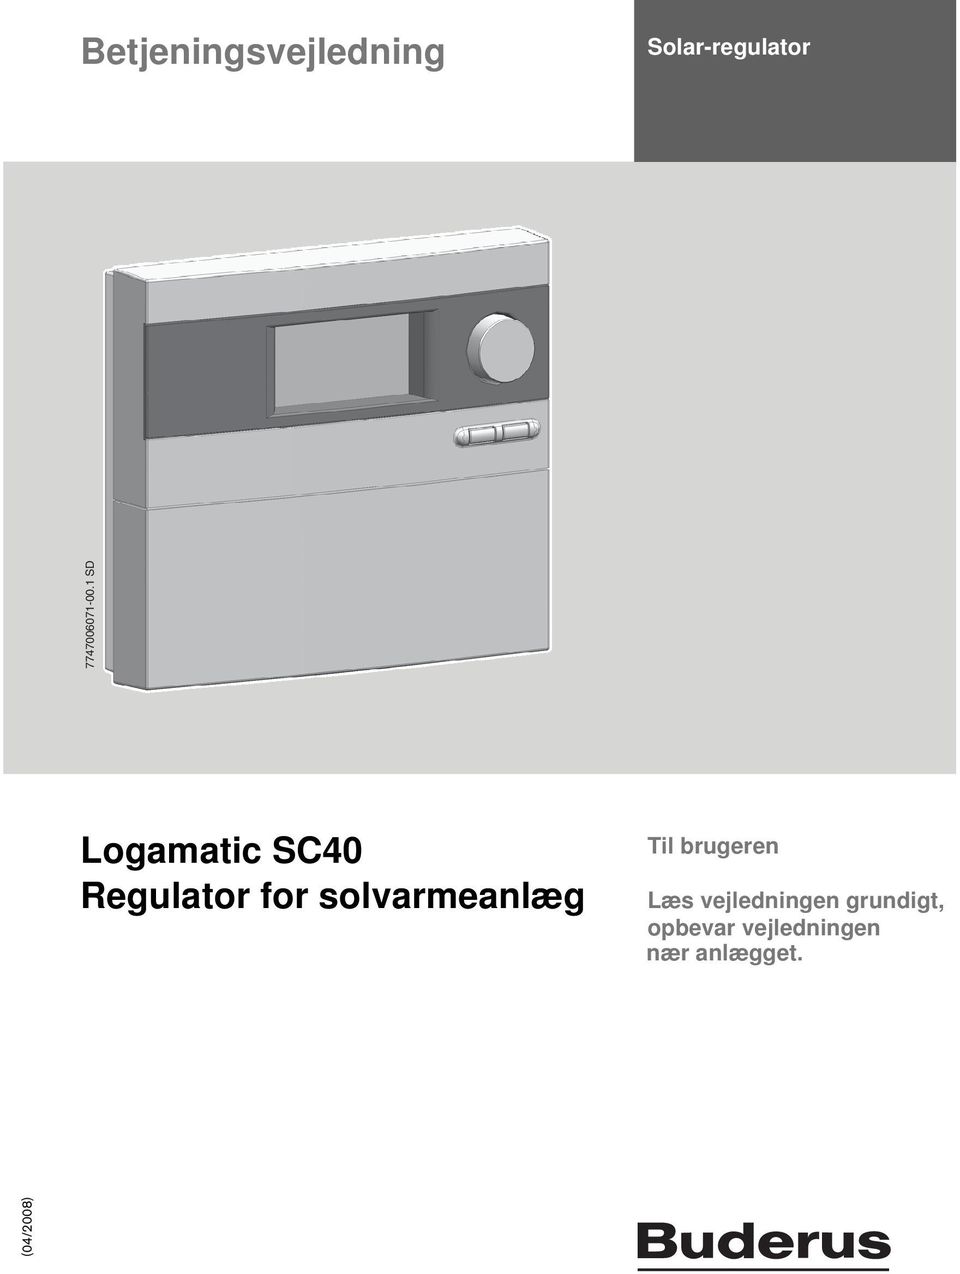 1 SD Logamatic SC40 Regulator for